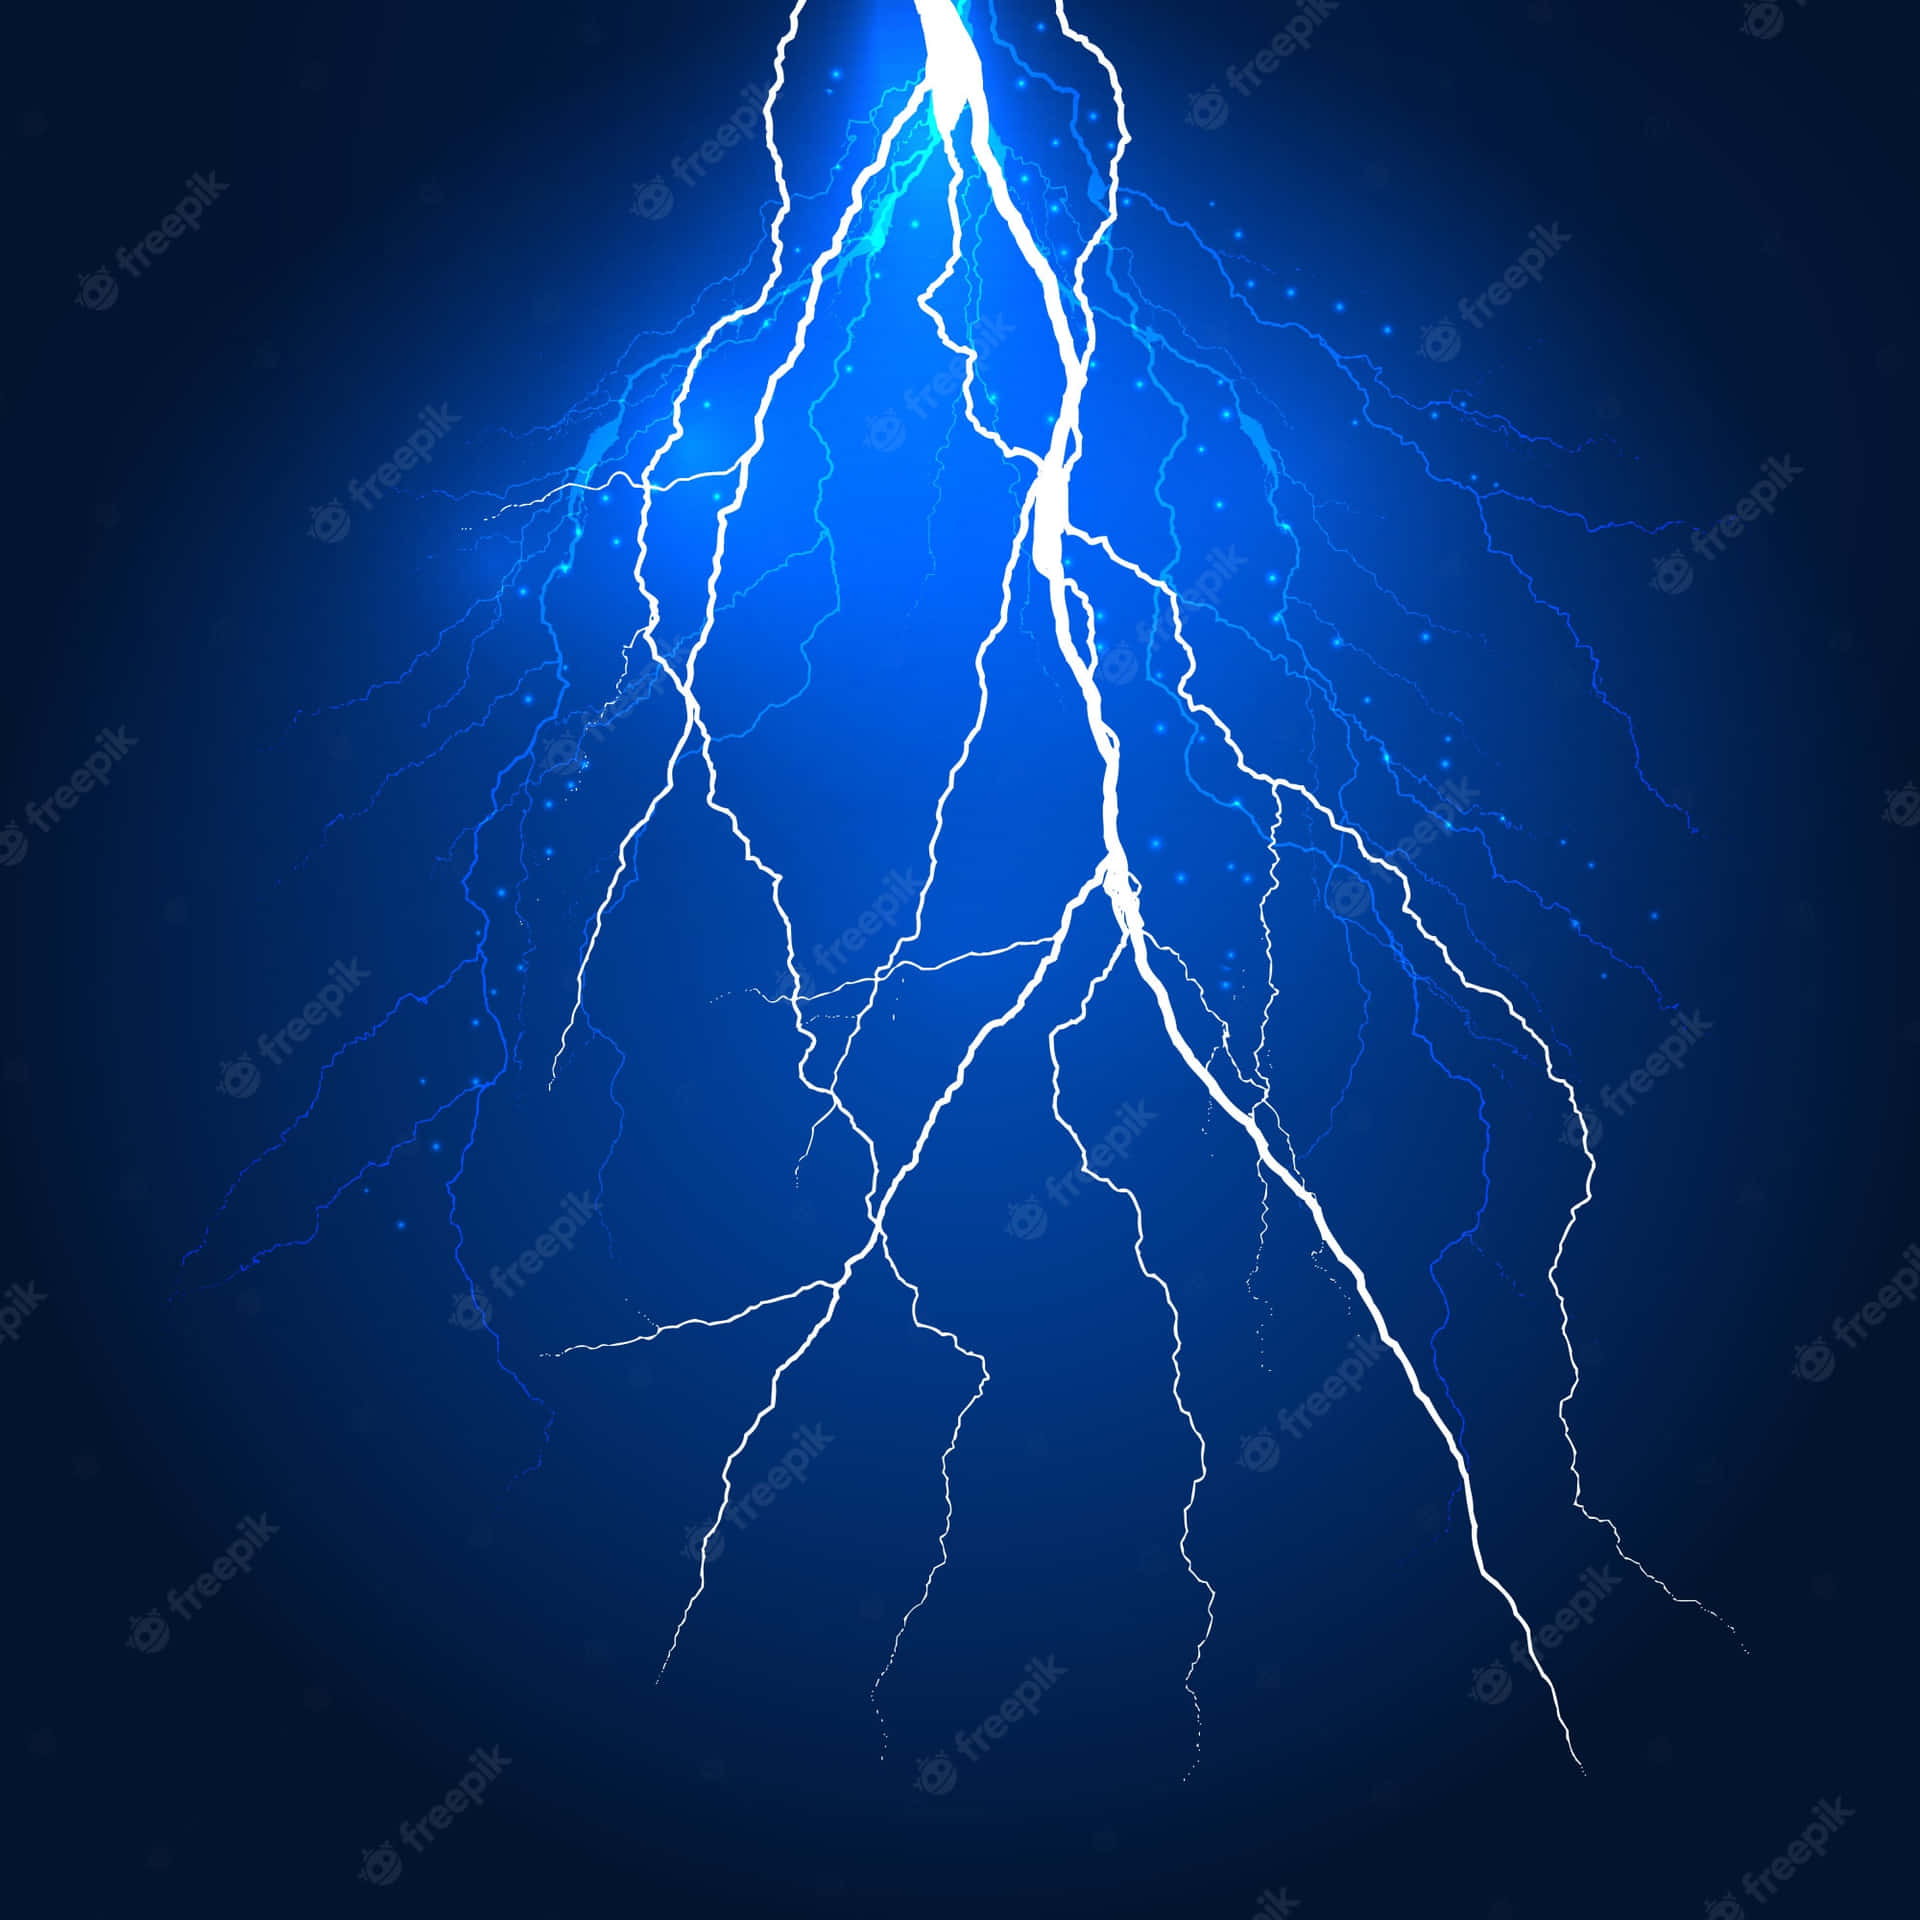 An electrifying bolt of blue lightning